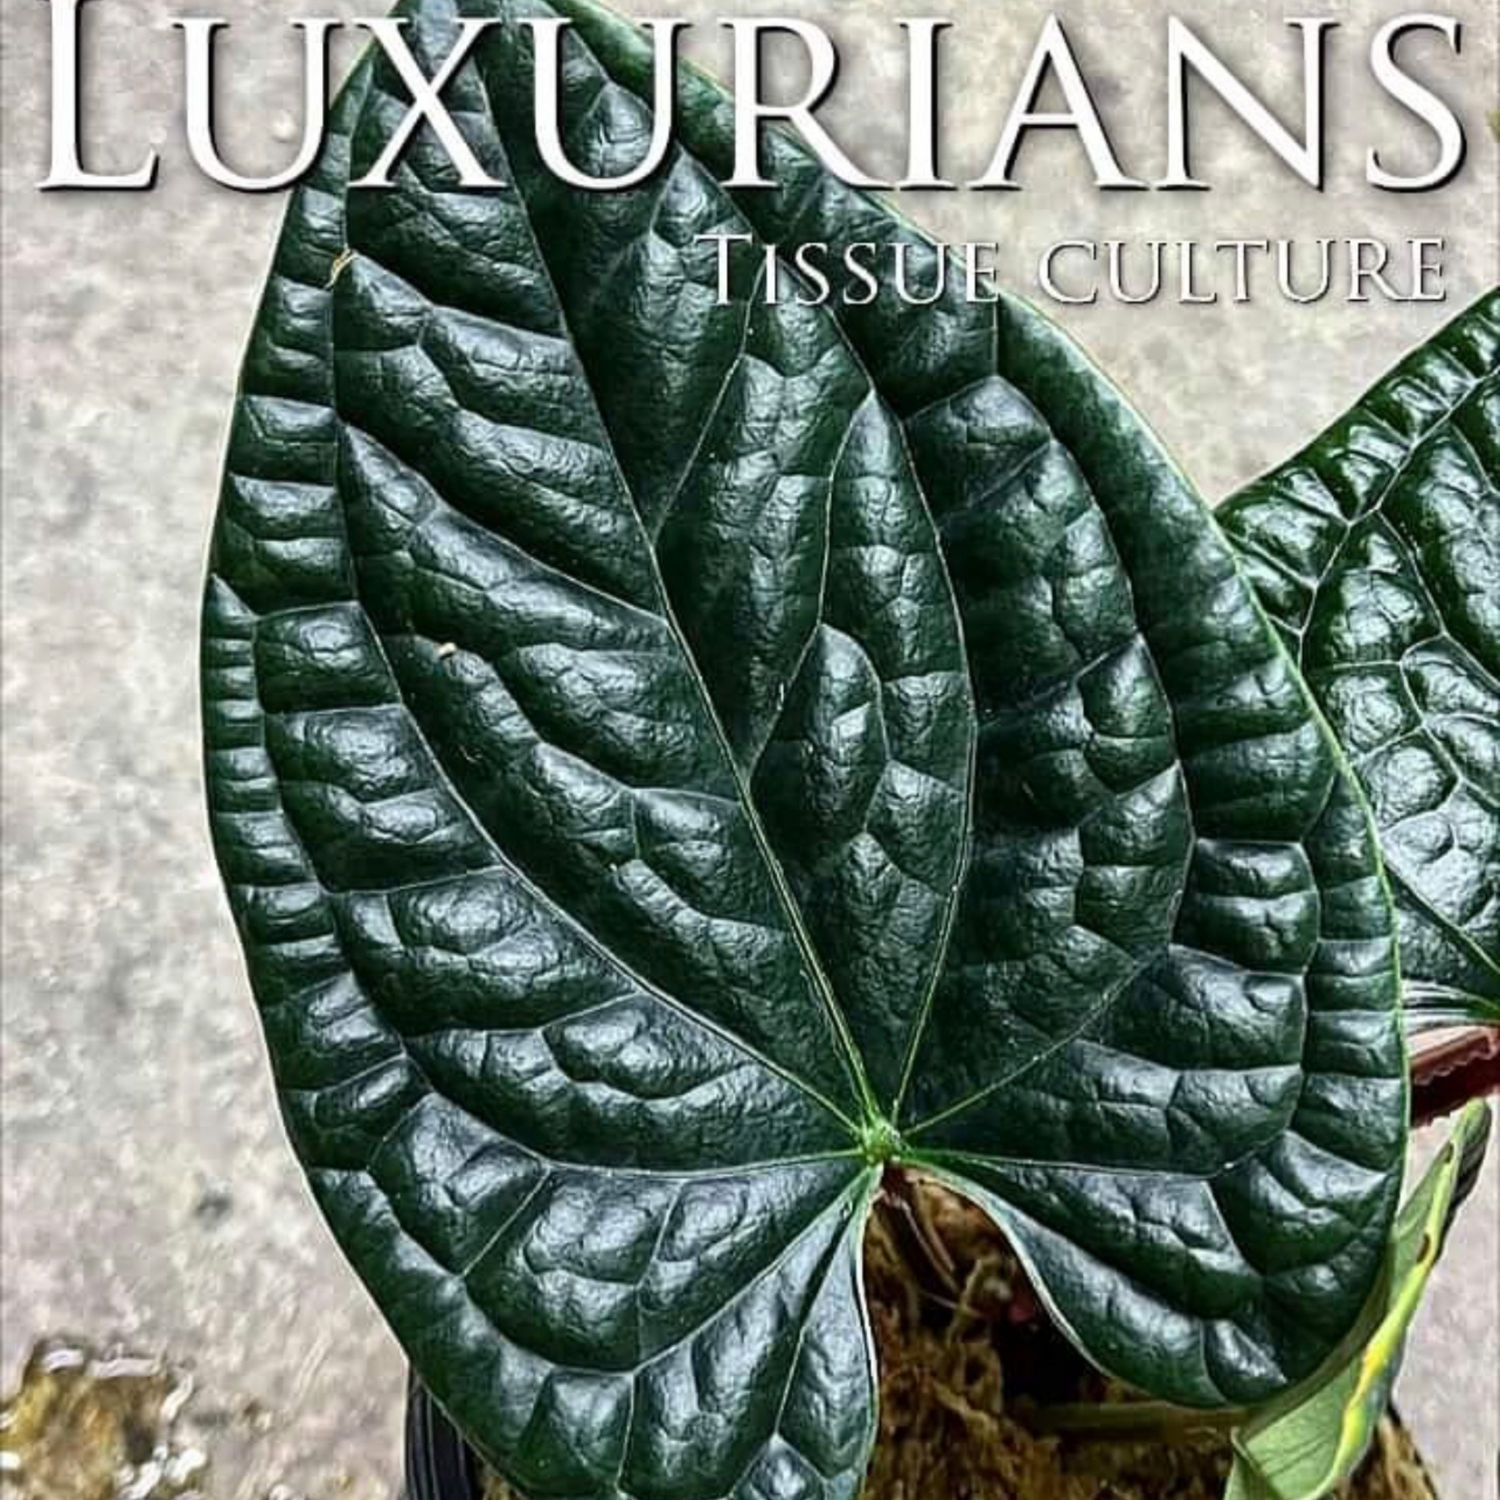 rare Anthurium luxurians for sale in Perth Australia